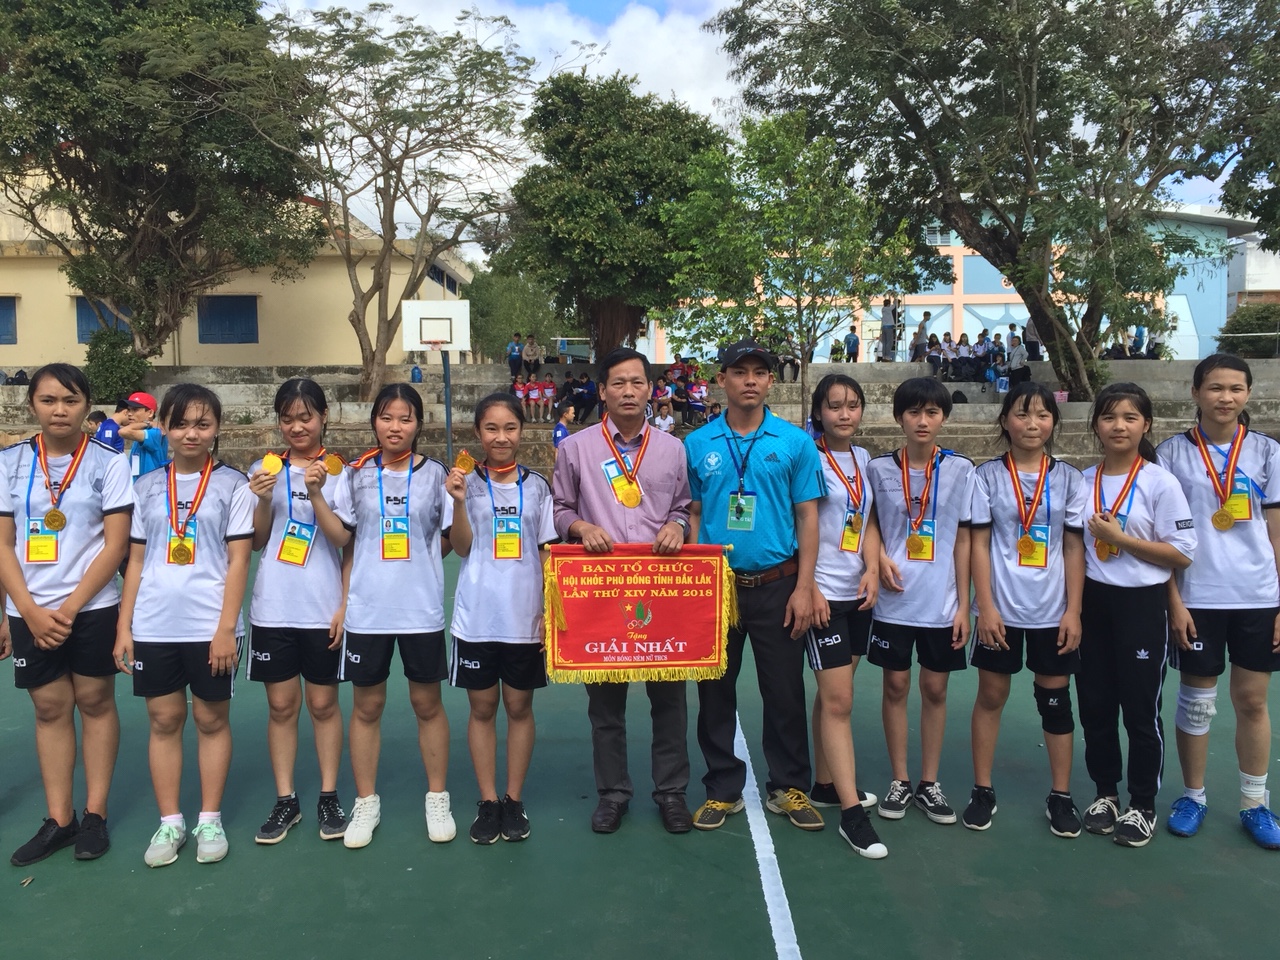 Chúc mừng Đội tuyển Bóng ném nữ nhà trường cùng với HLV: thầy Phan Xuân Tân đã đạt thành tích cao “HUY CHƯƠNG VÀNG” (Giải nhất) tại HKPĐ cấp tỉnh lần thứ 14 năm học 2017 – 2018.